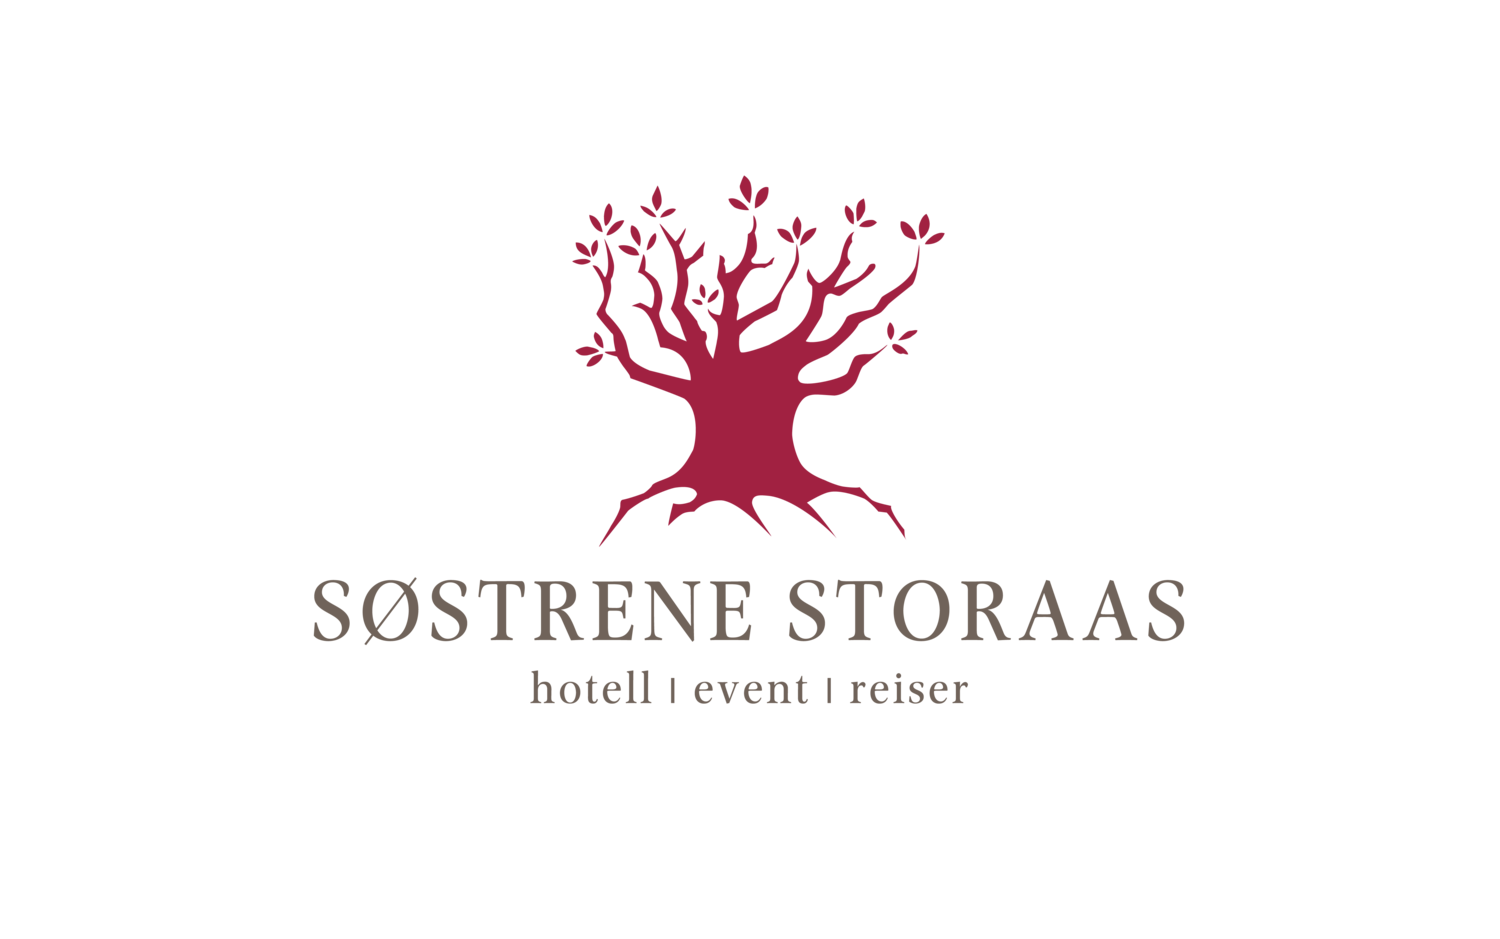 Søstrene Storaas - Hotell, Event, Reiser